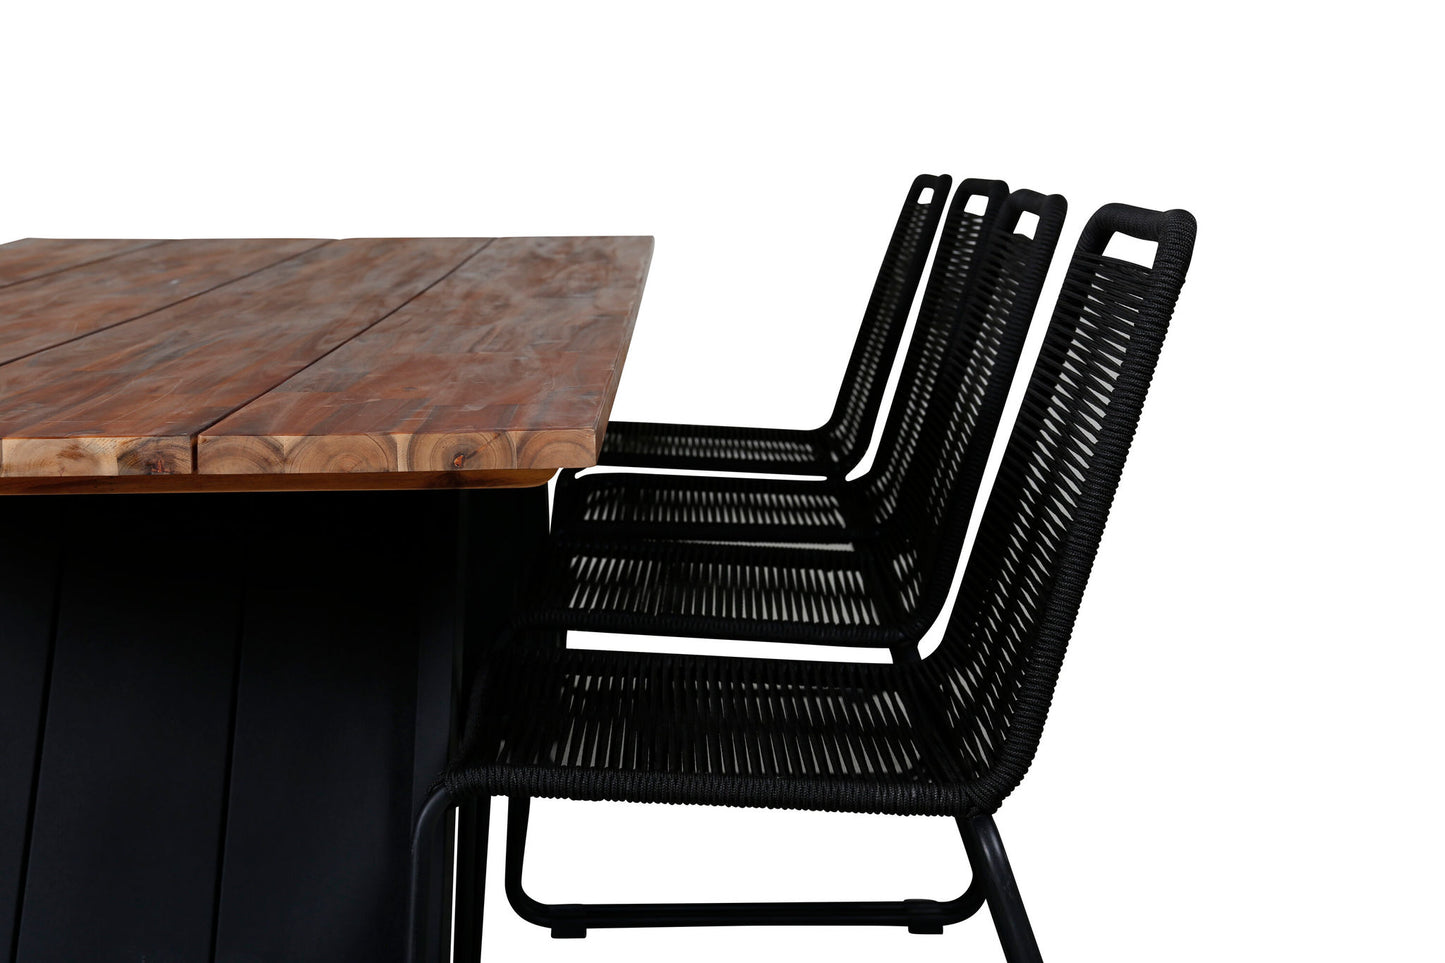 Doory - Spisebord, sort stål / akacie top i teak look - 250*100cm+Lidos Stabelbar stol - Sort Alu / Sort Reb